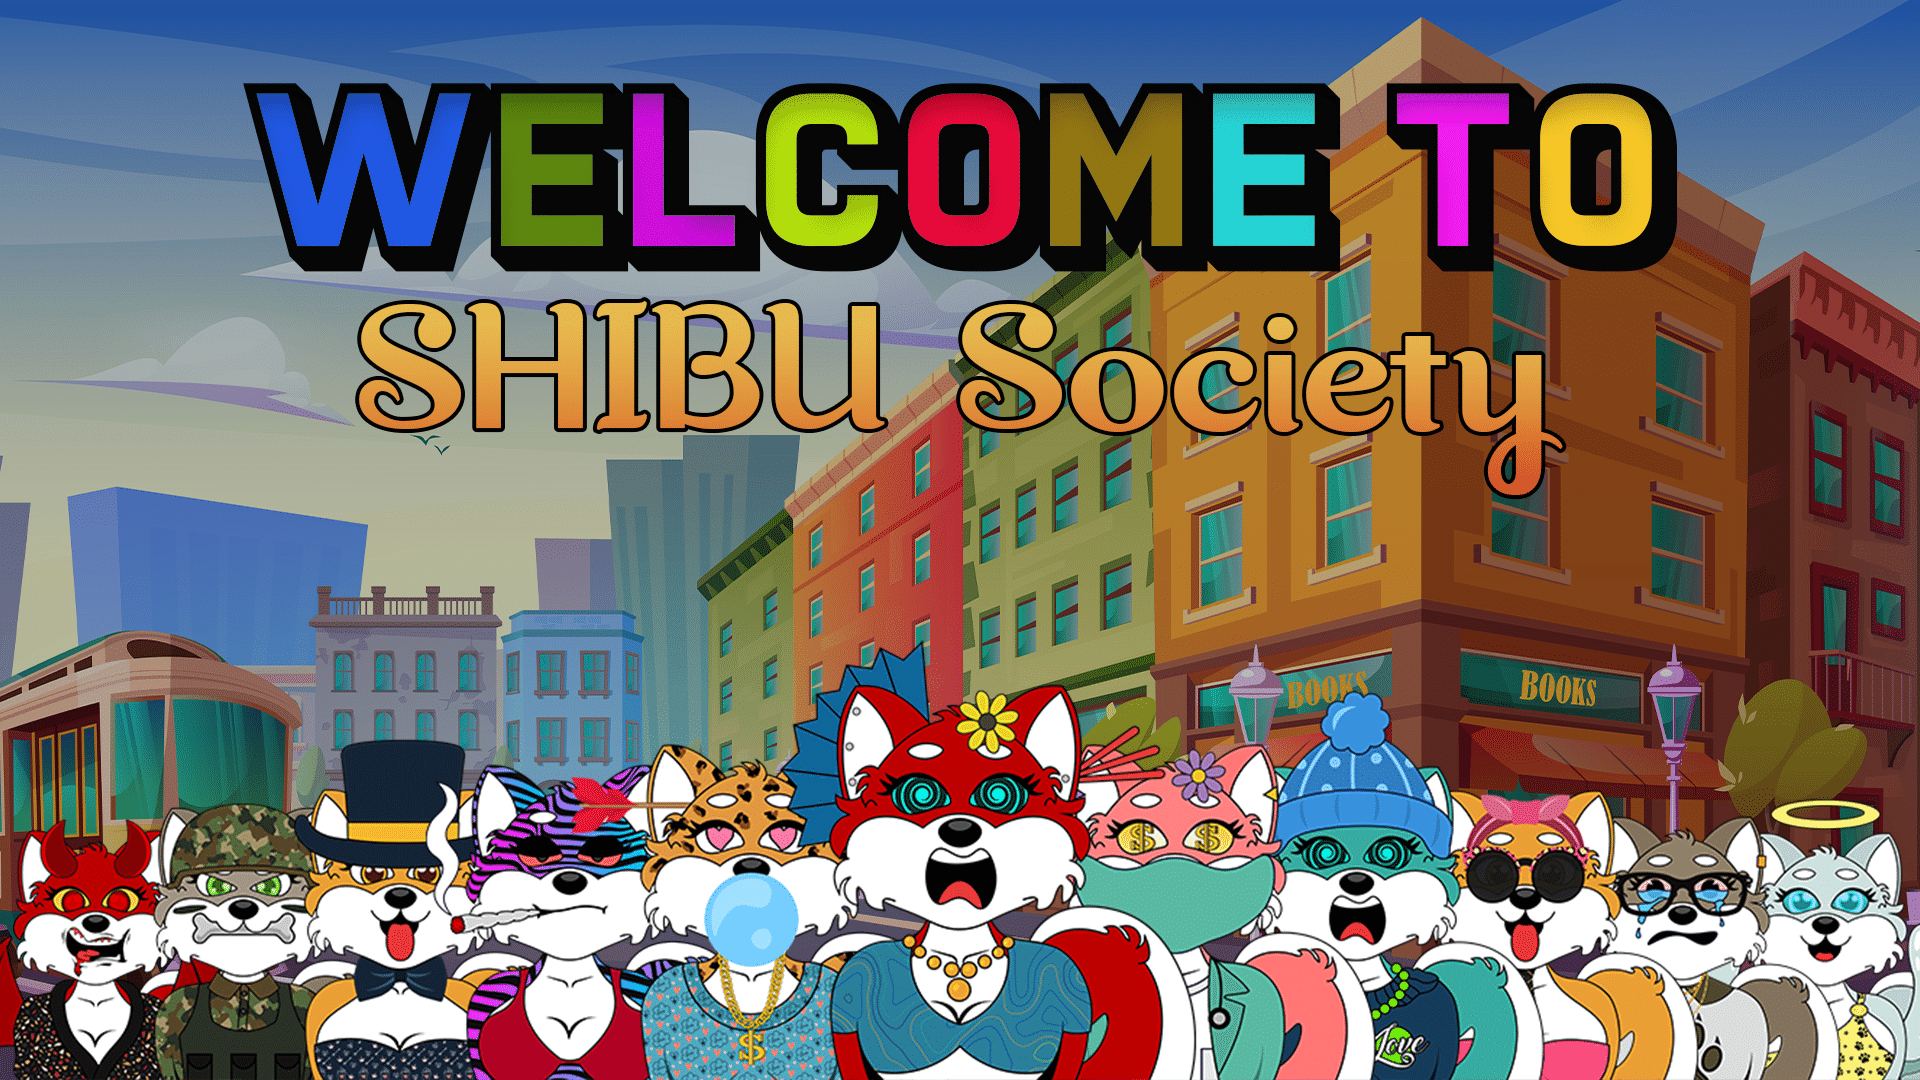 Shibu Society’s Mission